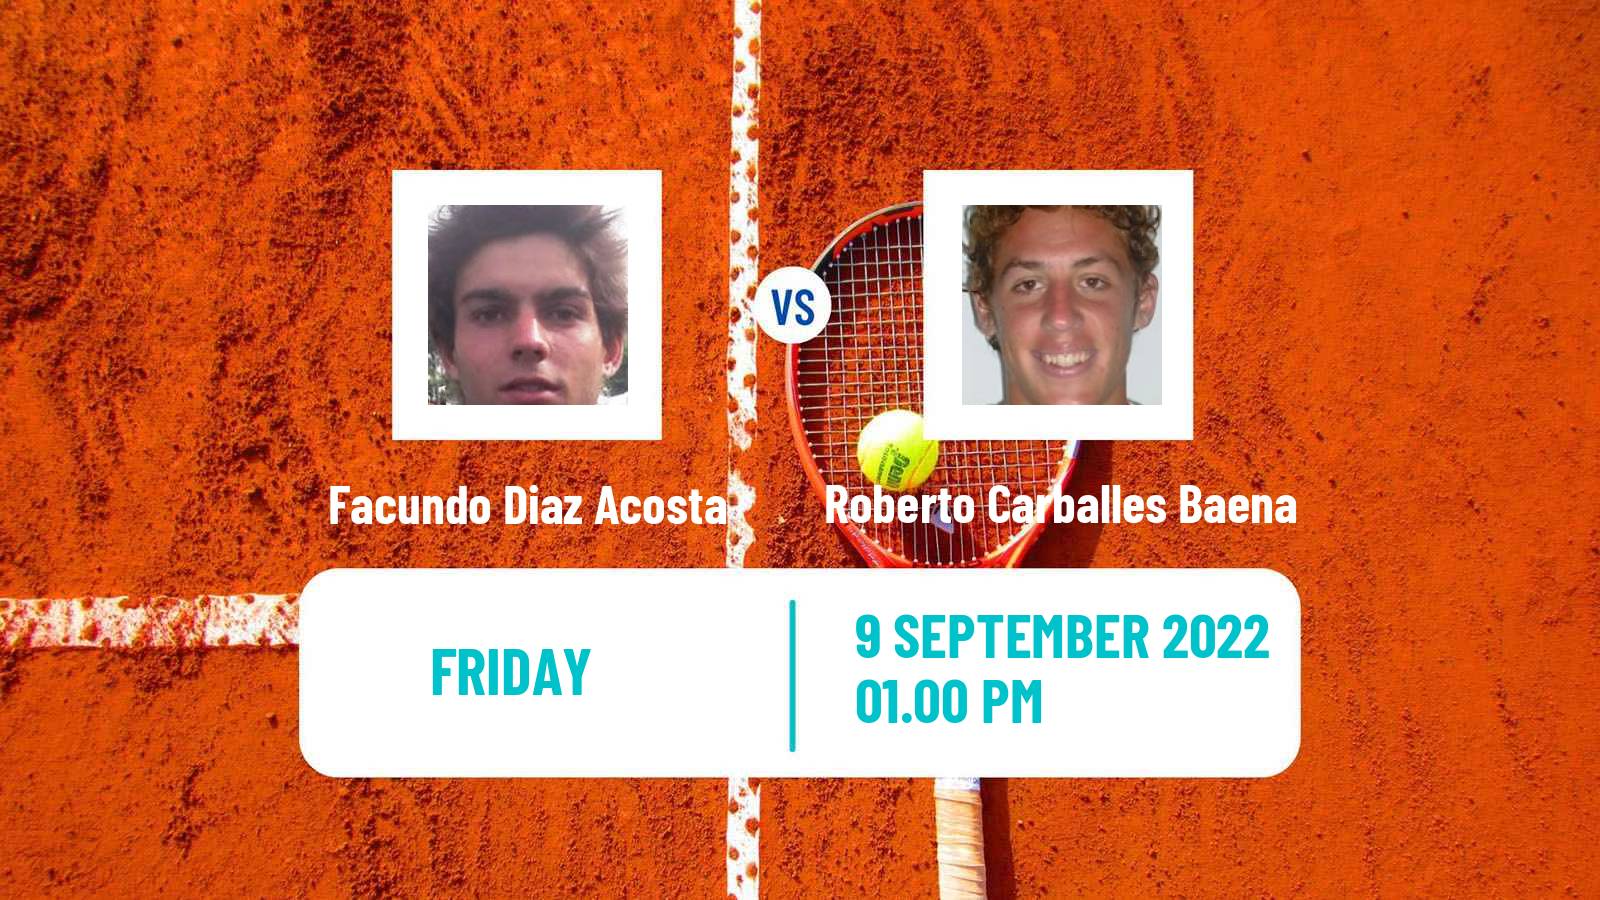 Tennis ATP Challenger Facundo Diaz Acosta - Roberto Carballes Baena